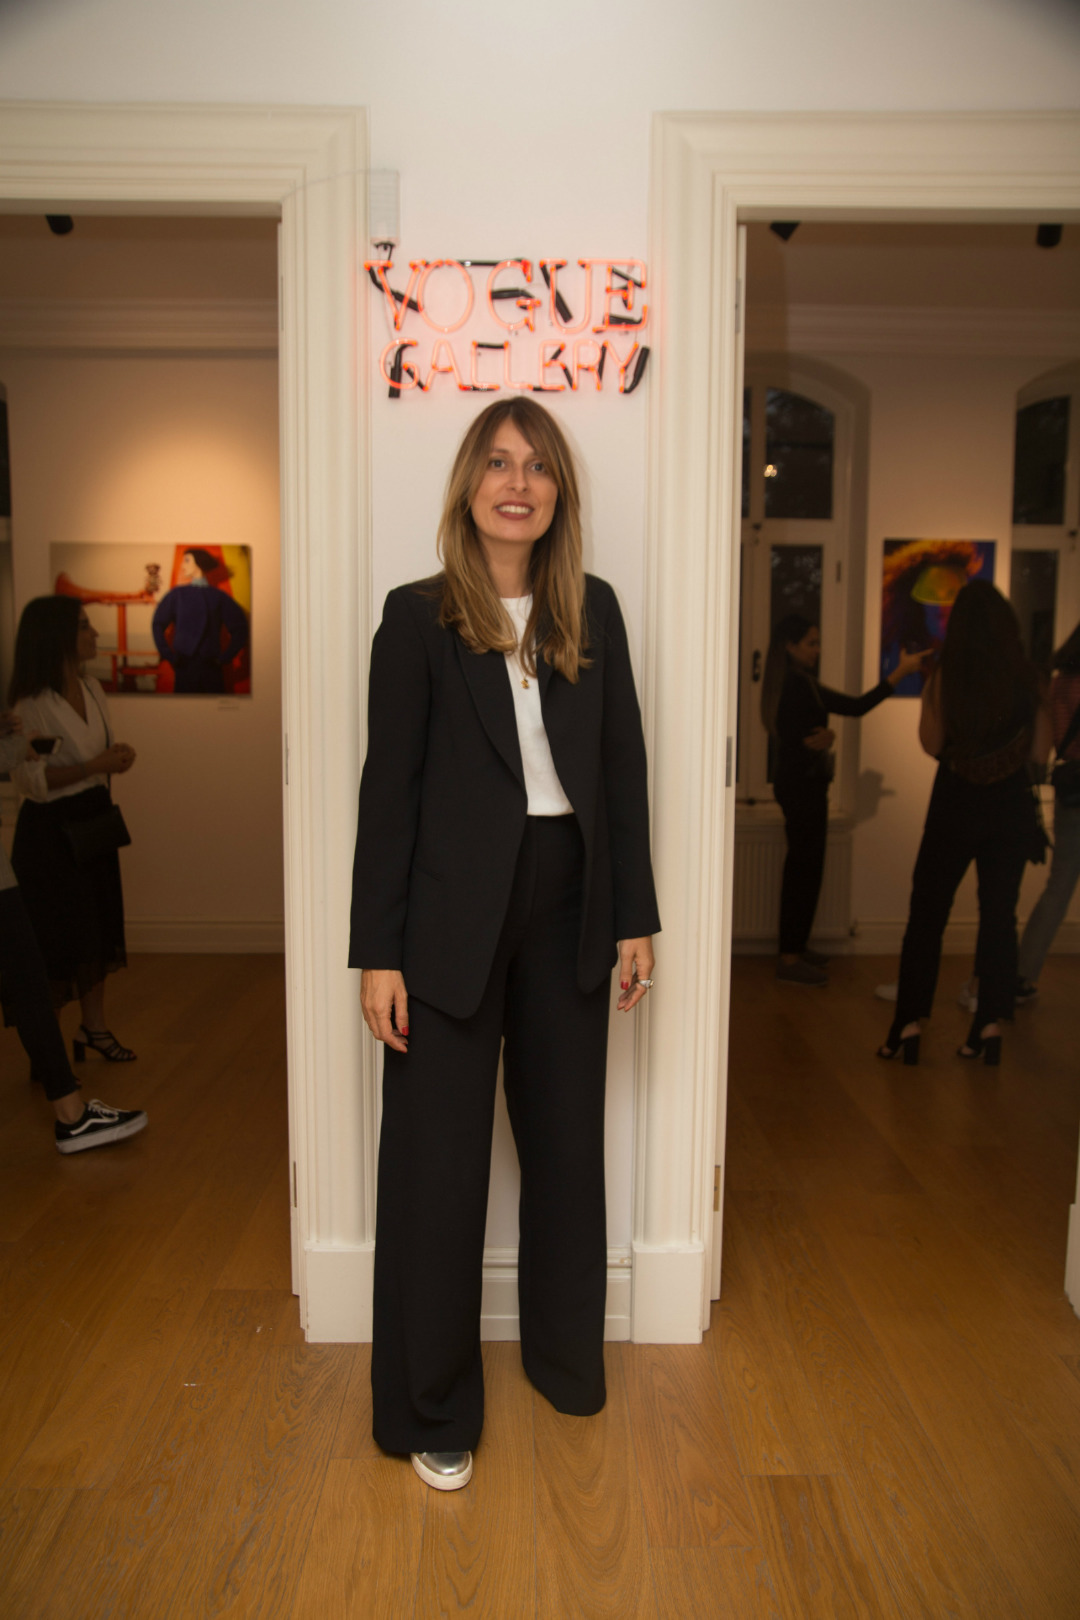 Vogue Gallery Artweeks @Akaretler'de Açıldı